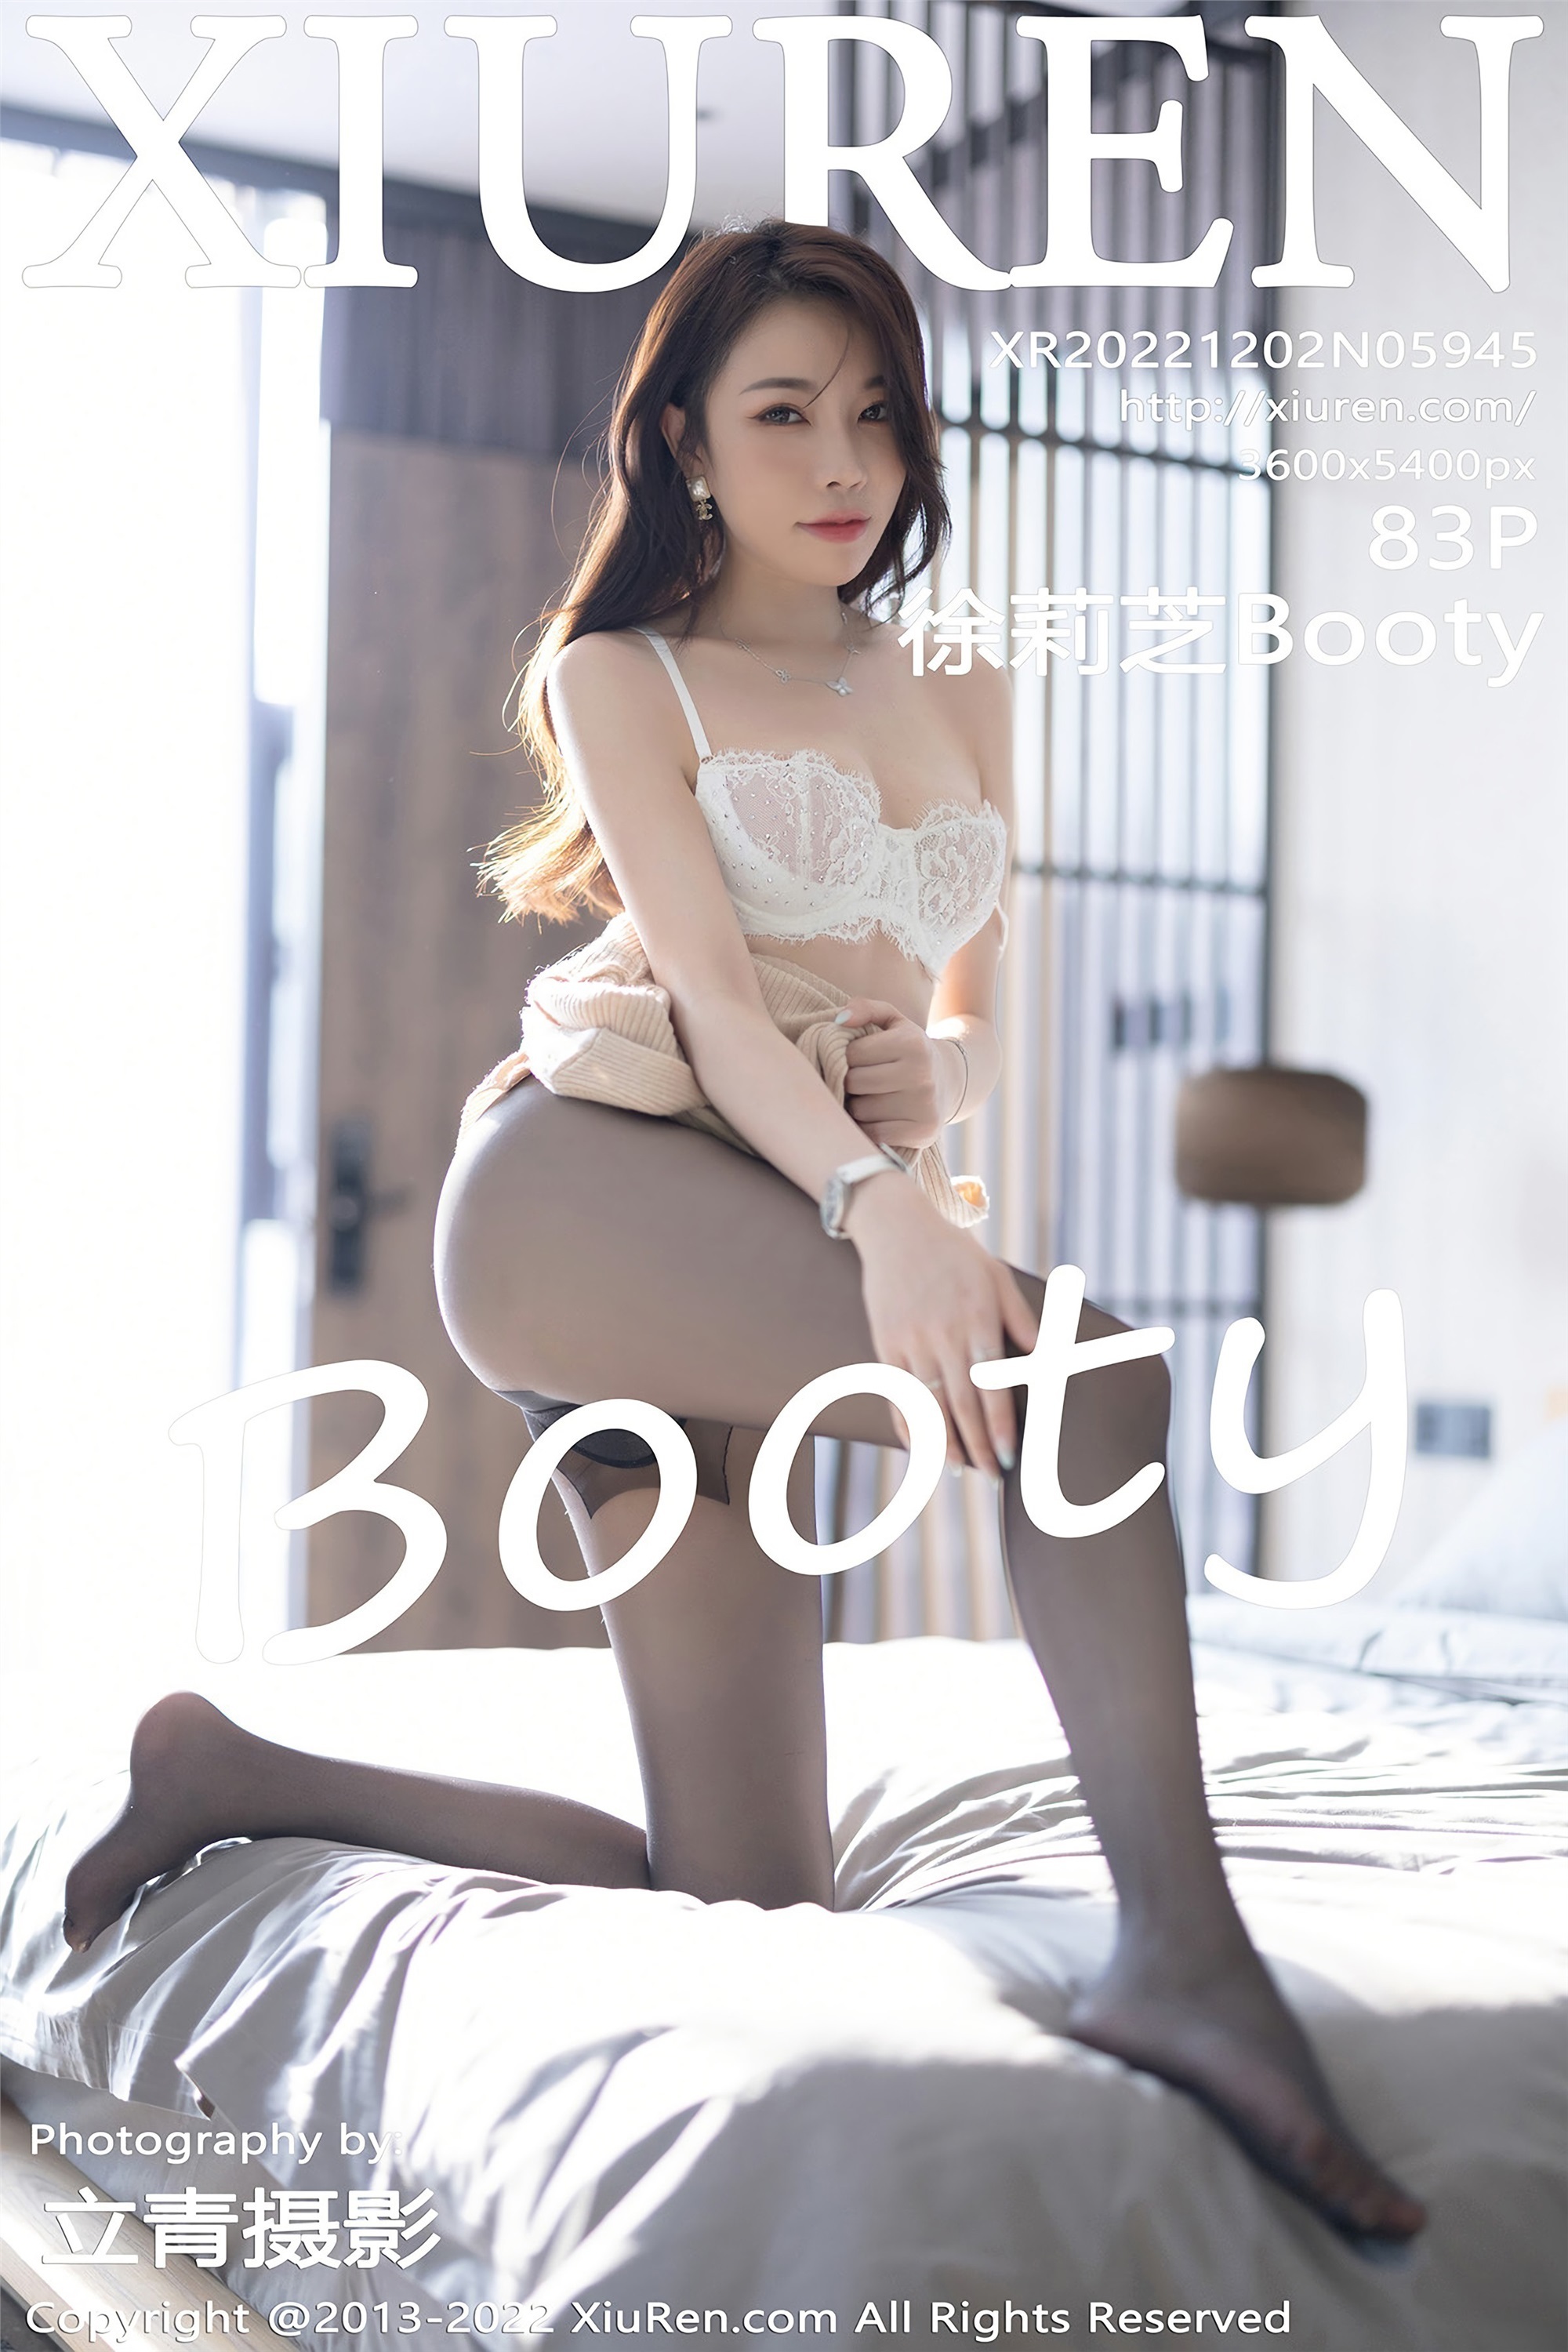 Xiuren 2022.12.02 NO.5945 Xu Lizhi Booty